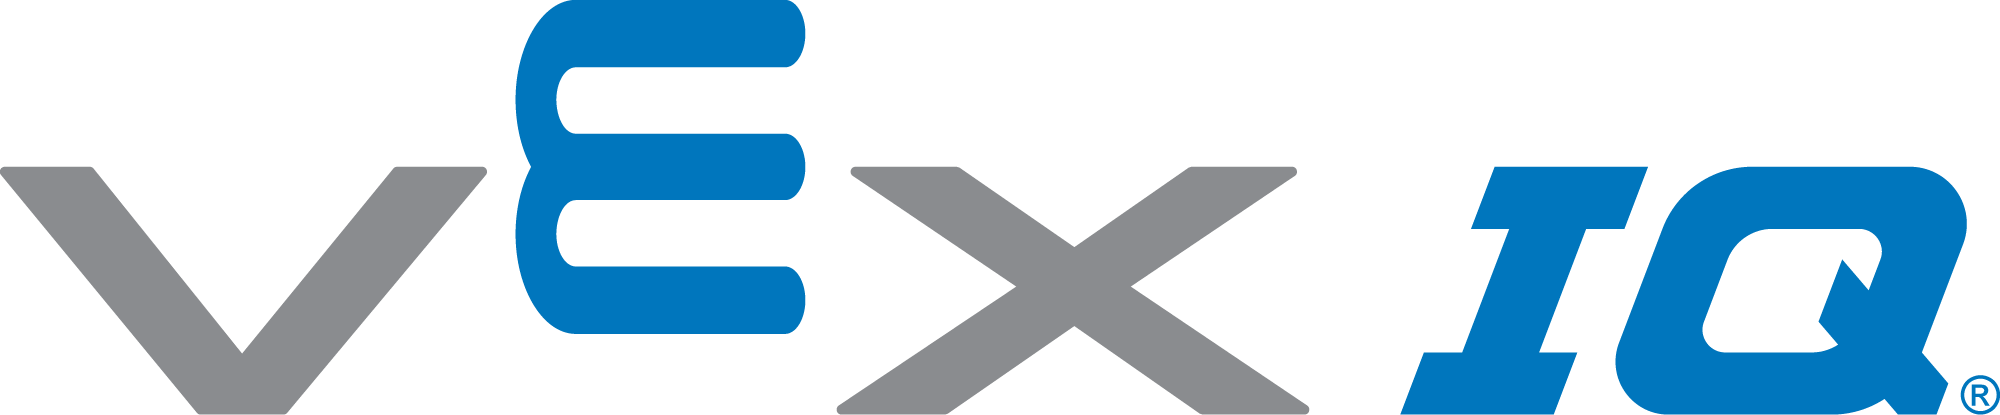 Logo VEX IQ